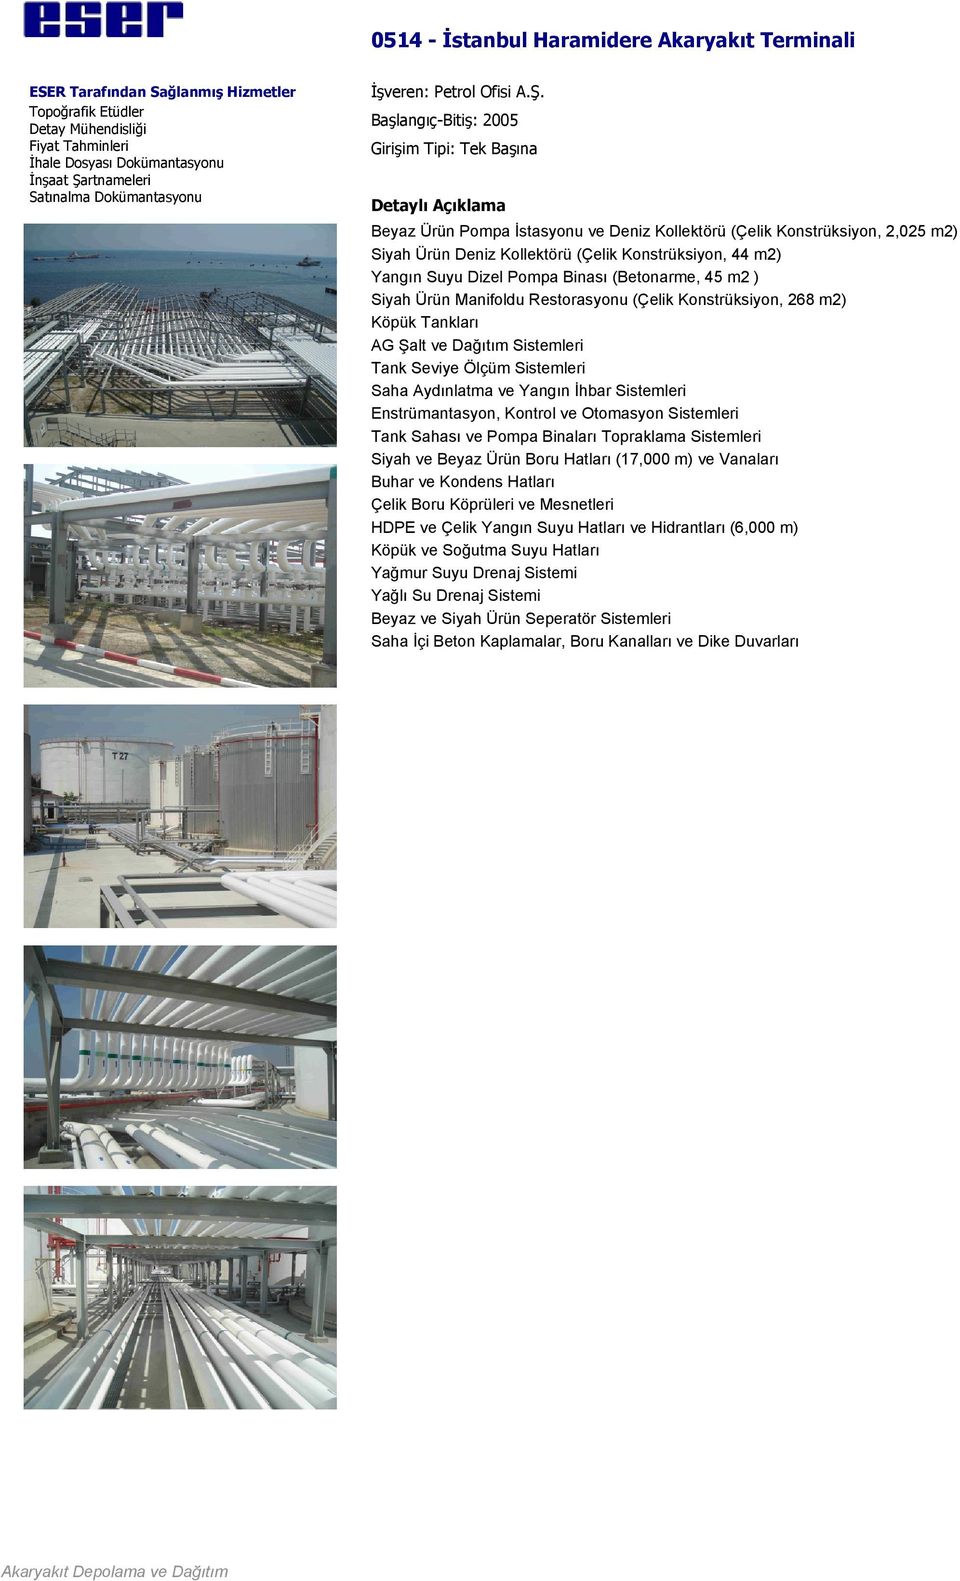 (Betonarme, 45 m2 ) Siyah Ürün Manifoldu Restorasyonu (Çelik Konstrüksiyon, 268 m2) Köpük Tankları AG Şalt ve Dağıtım Sistemleri Tank Seviye Ölçüm Sistemleri Saha Aydınlatma ve Yangın İhbar